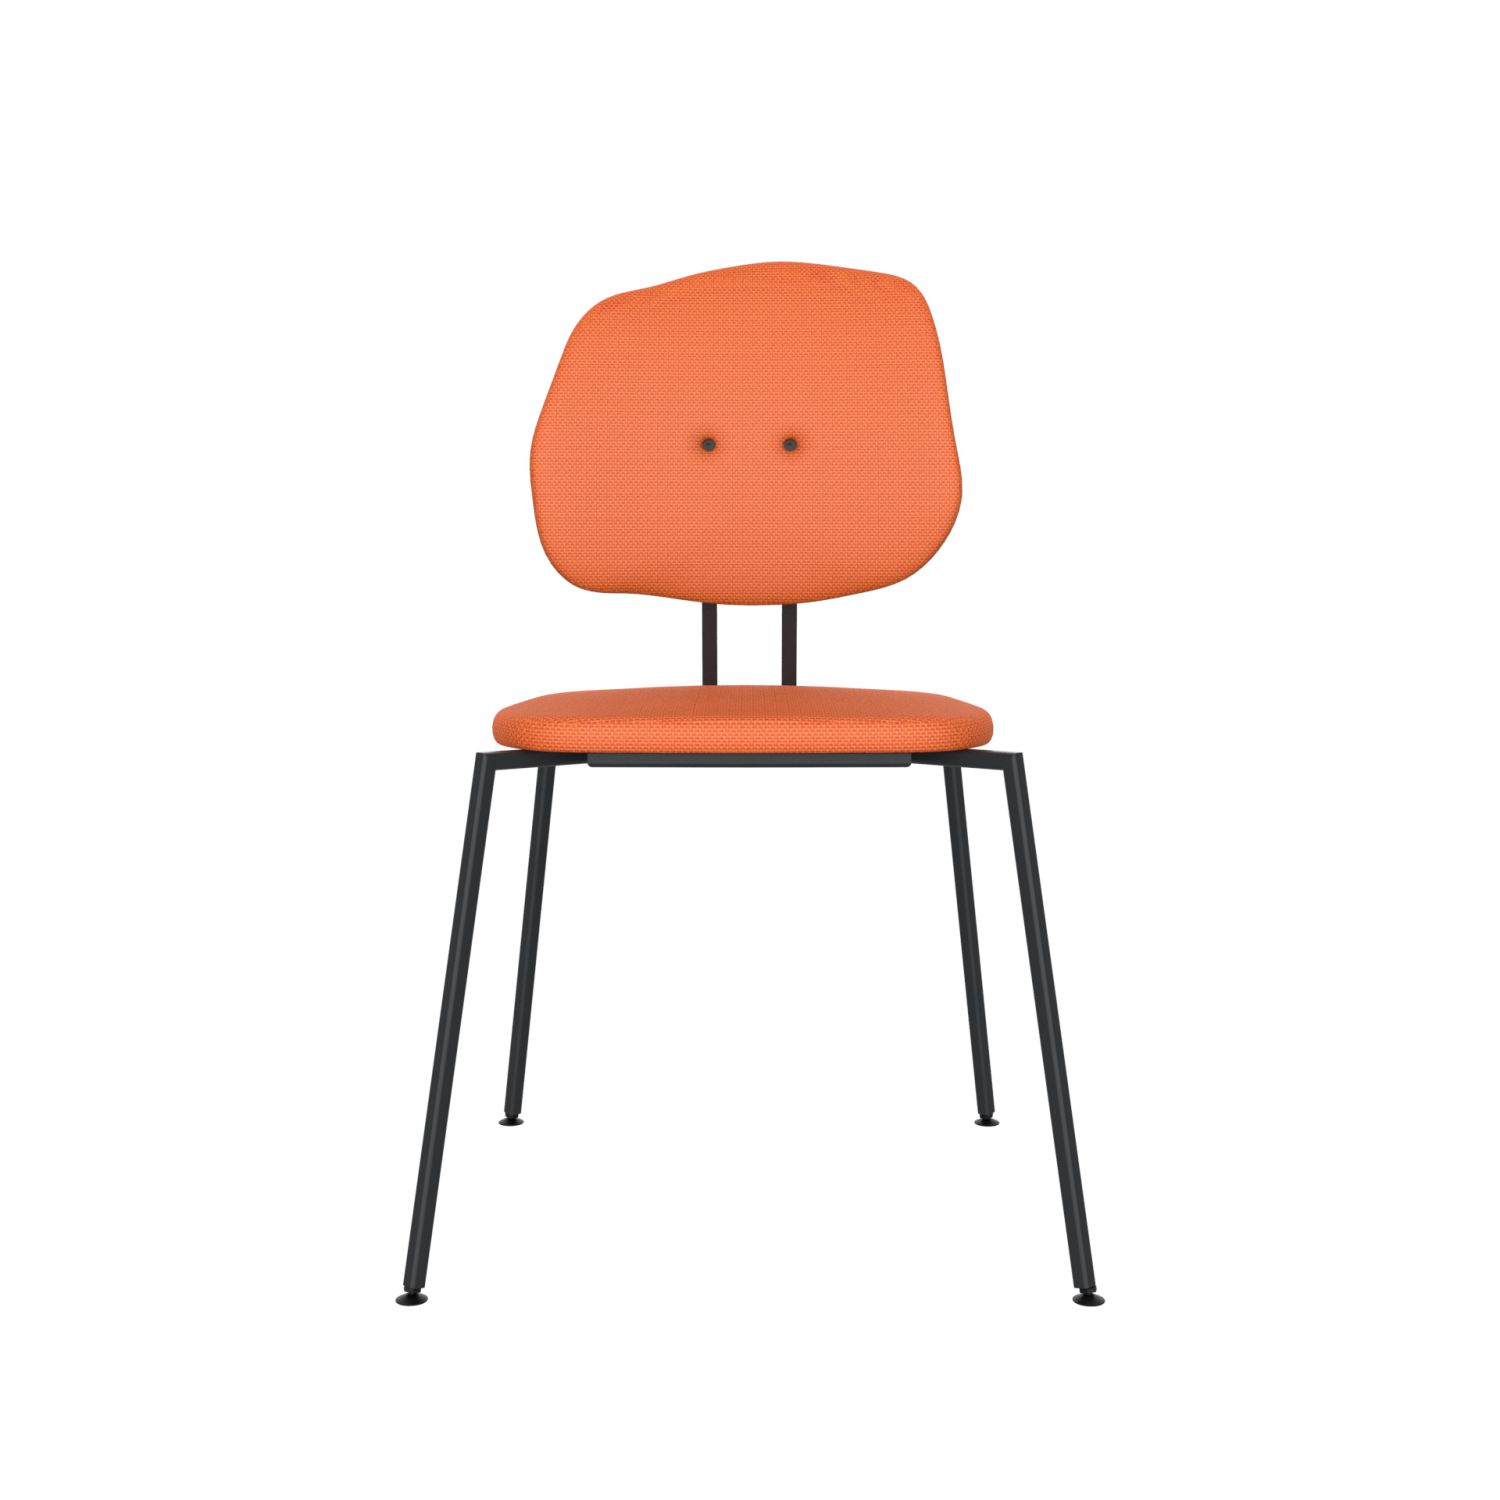 lensvelt maarten baas chair 141 stackable without armrests backrest g burn orange 102 black ral9005 hard leg ends